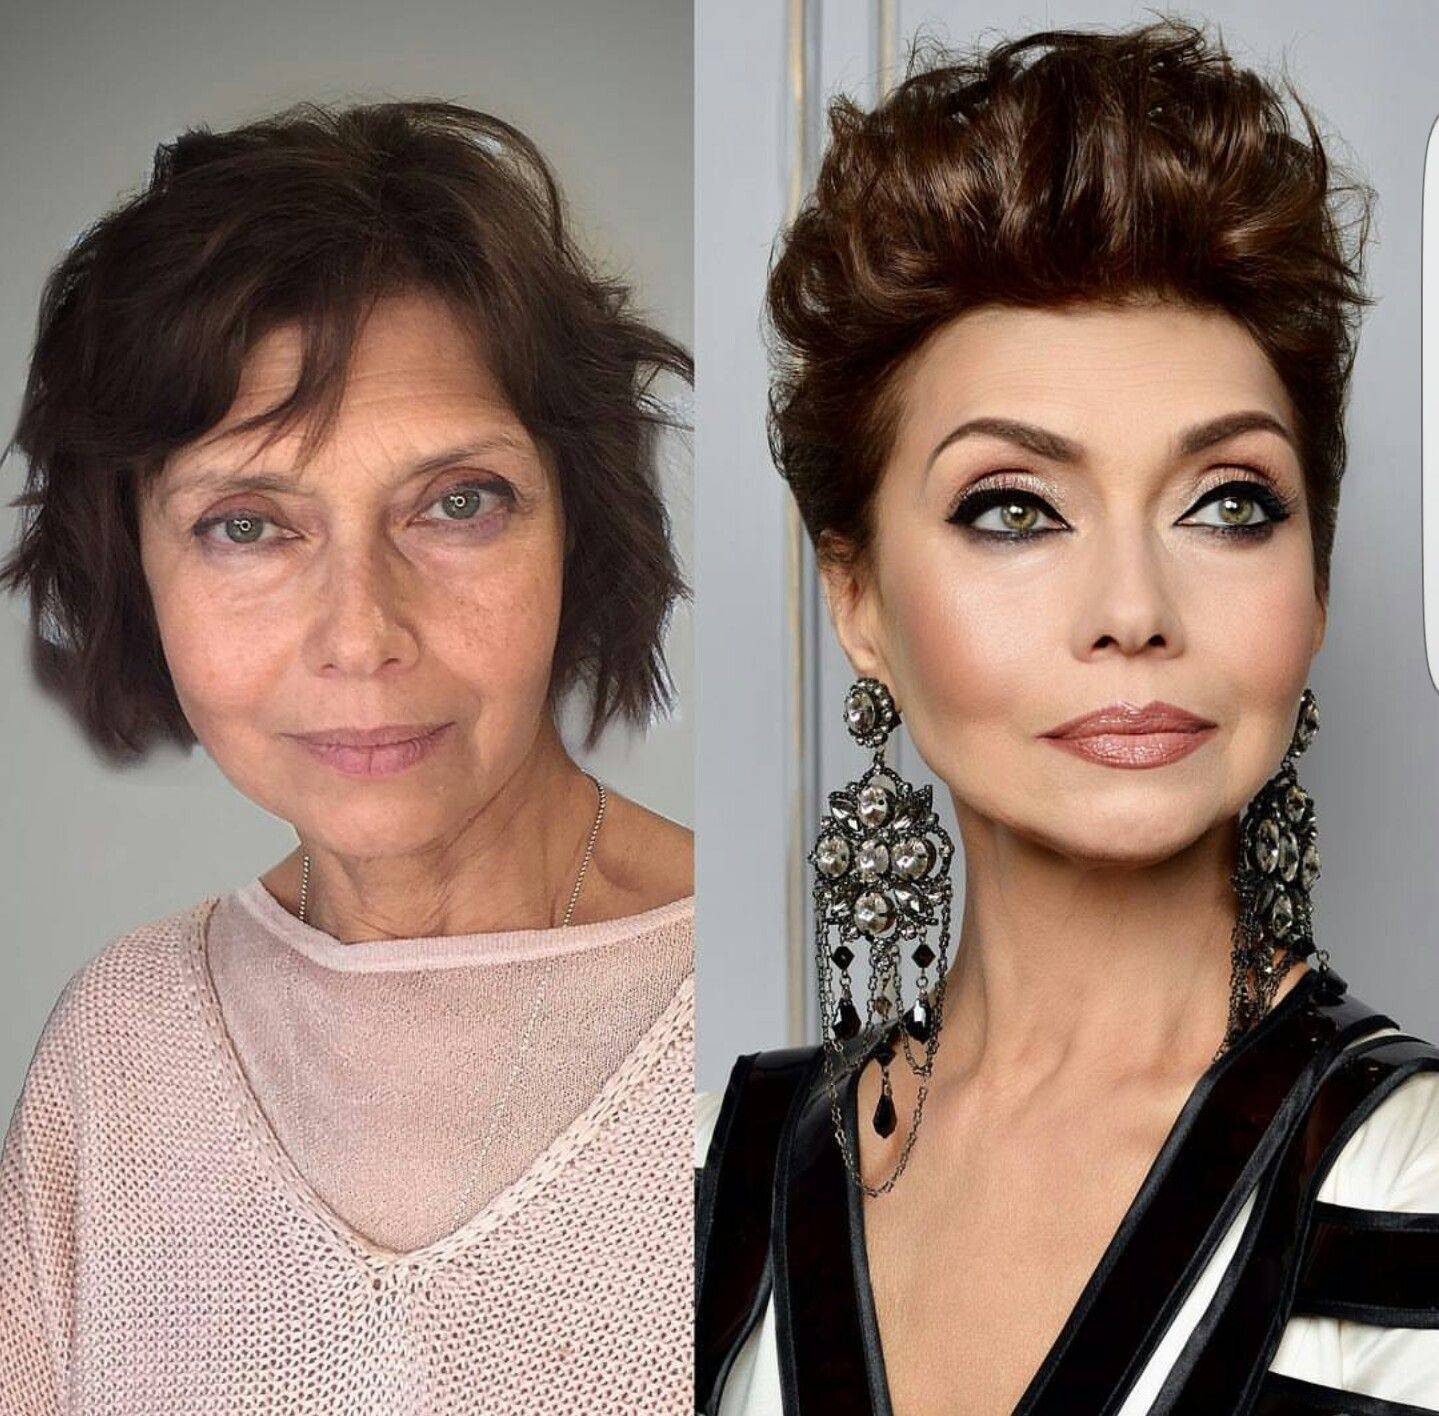 Антивозрастной макияж пошагово: фото до и после